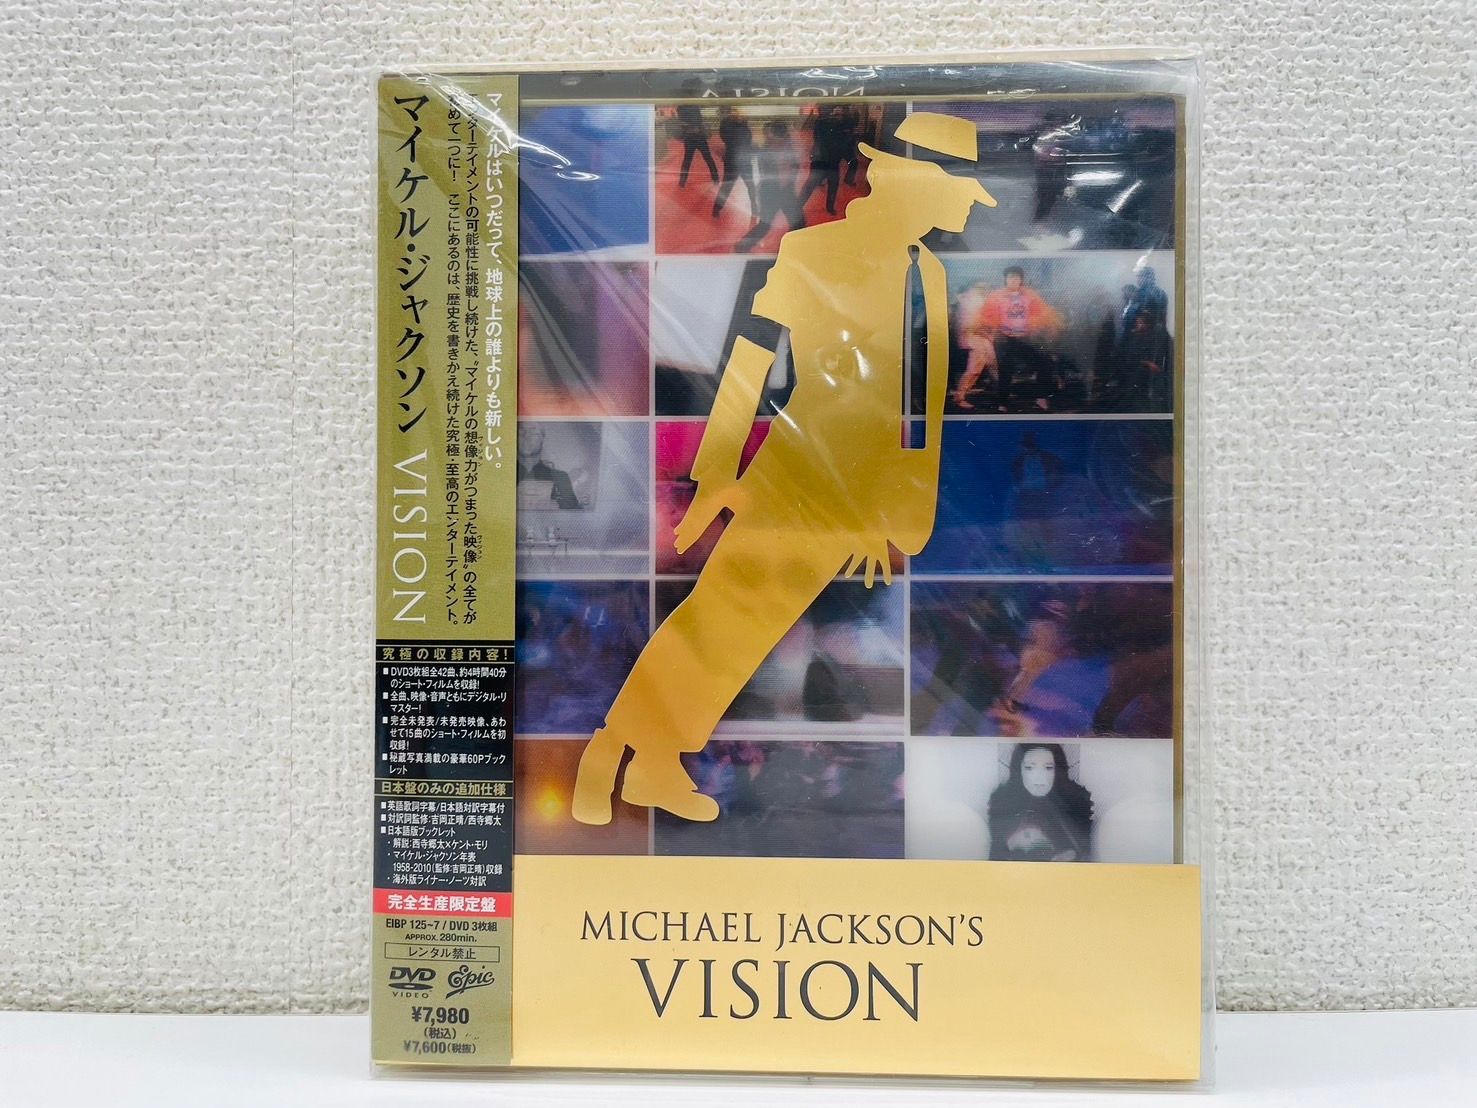 マイケル・ジャクソン VISION【完全生産限定盤】 [DVD] - メルカリ